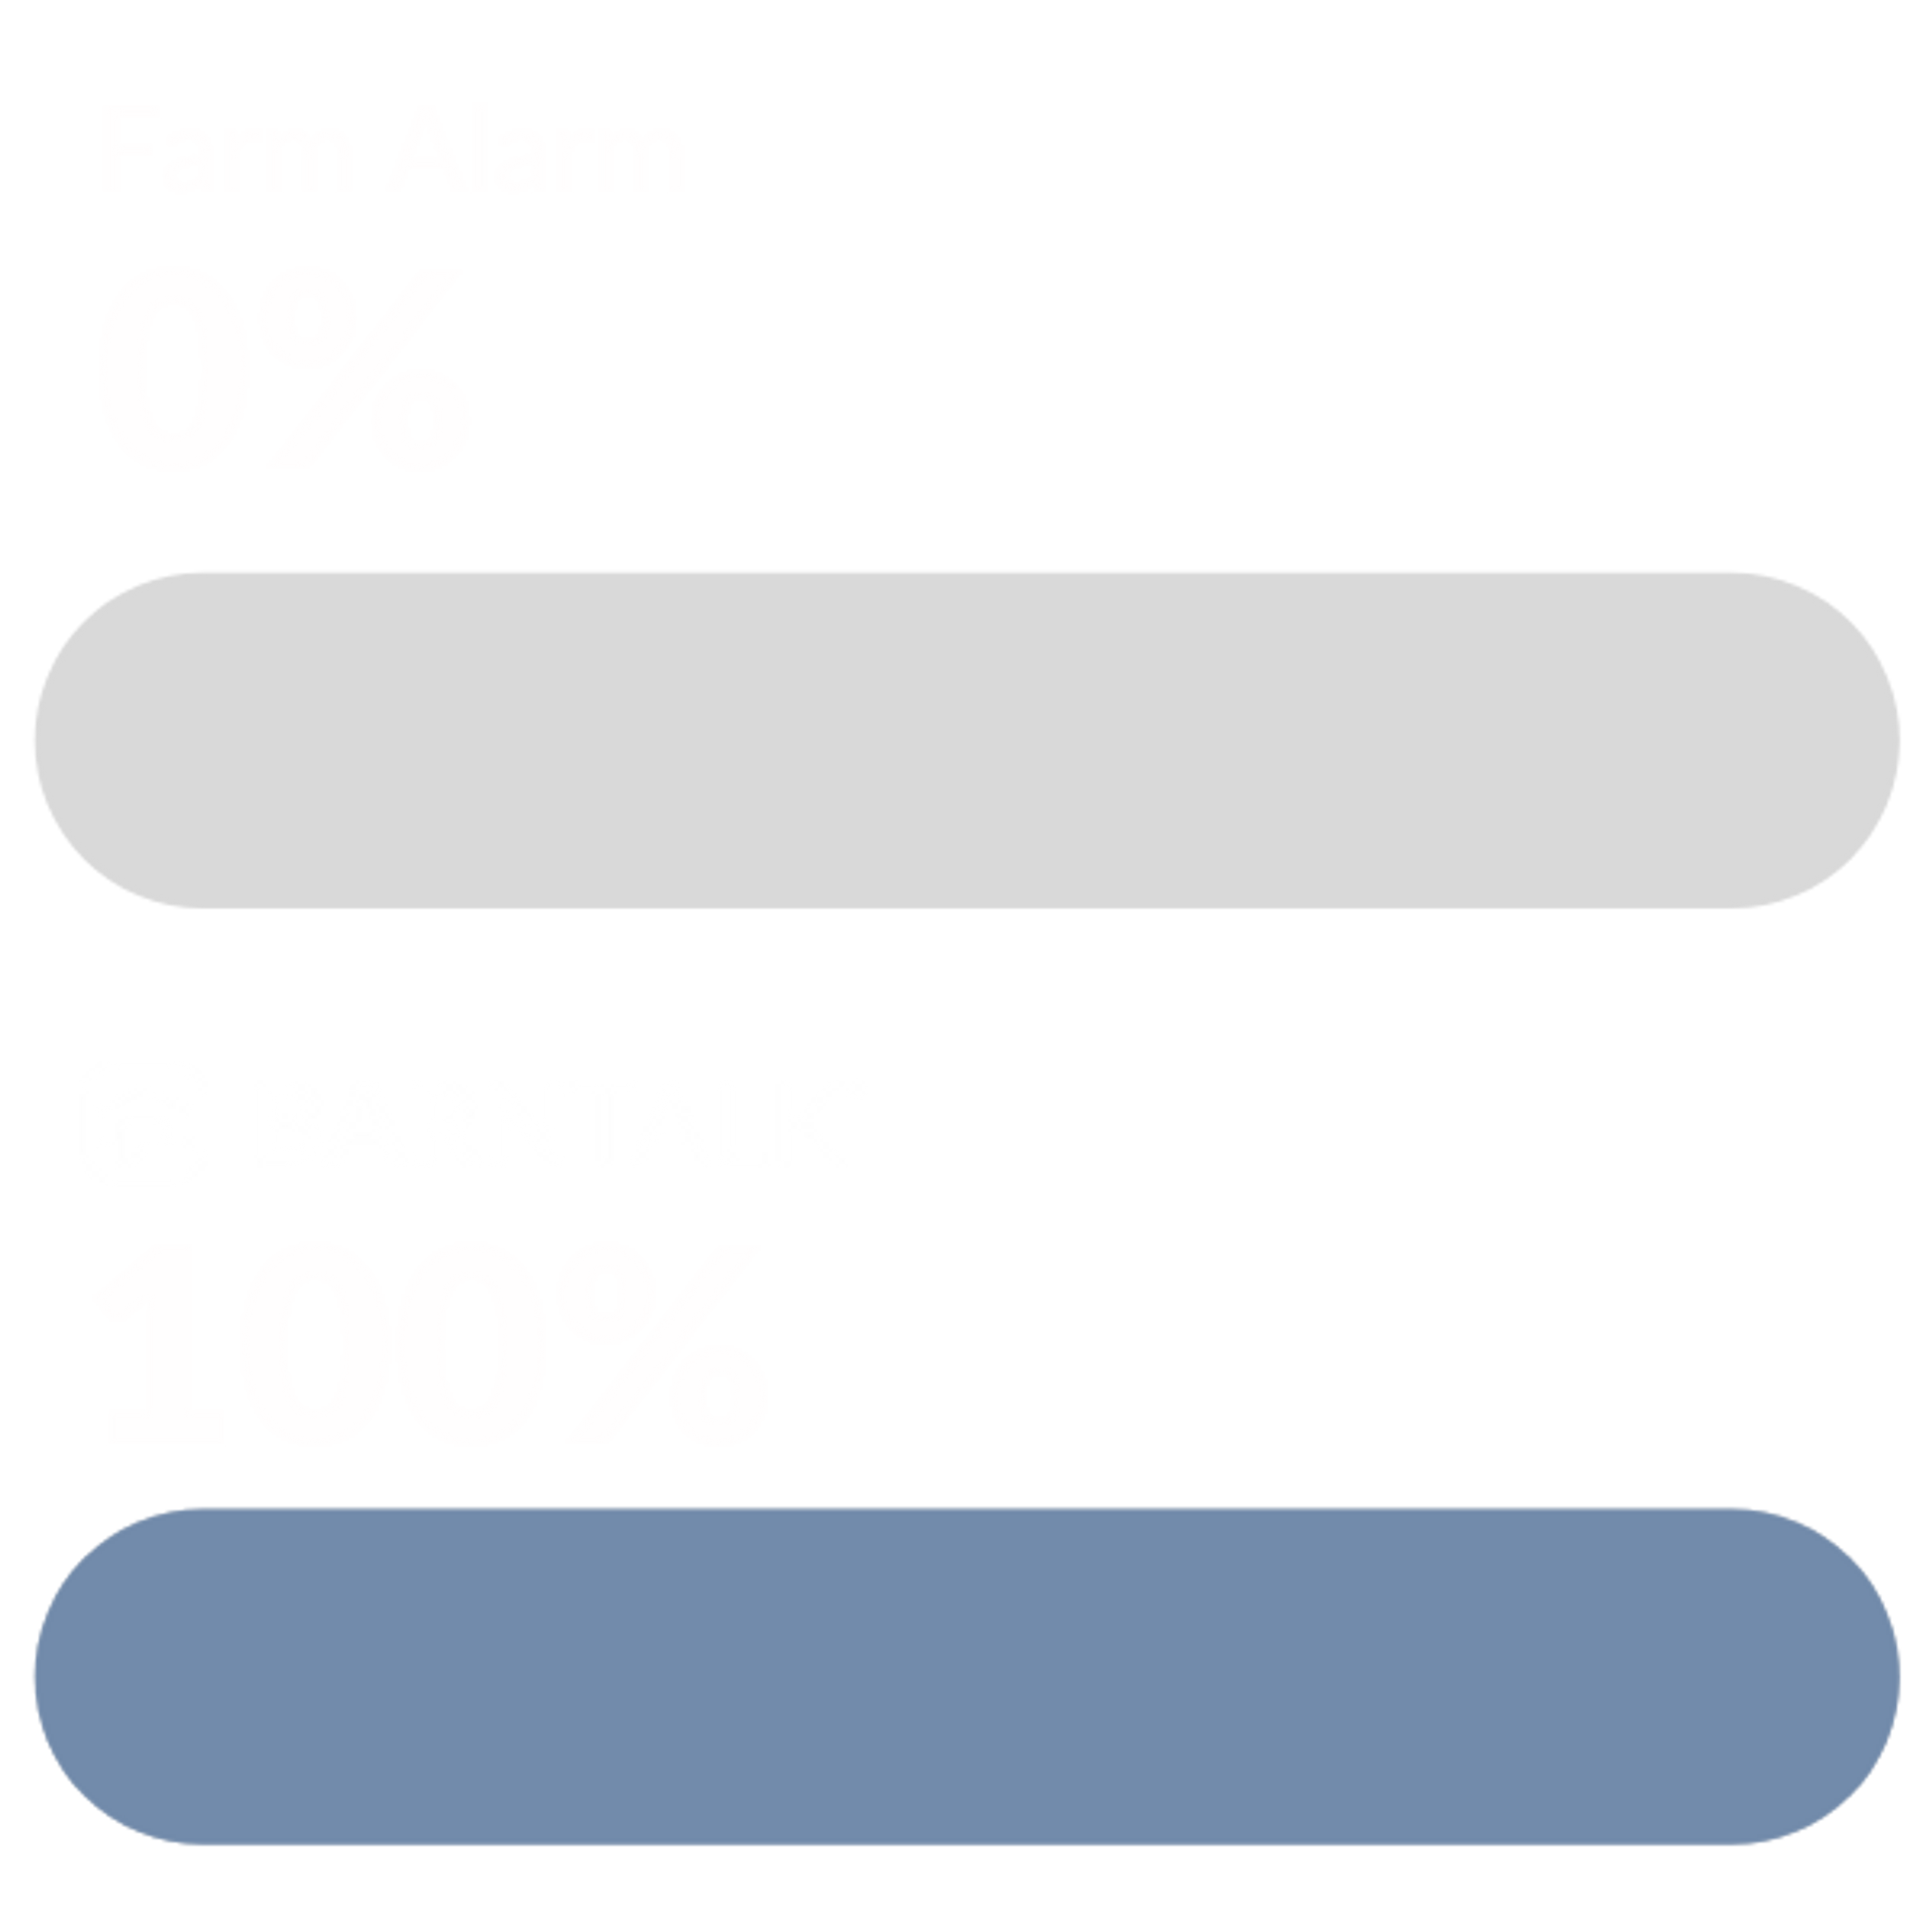 Generator Monitoring Farm Alarm